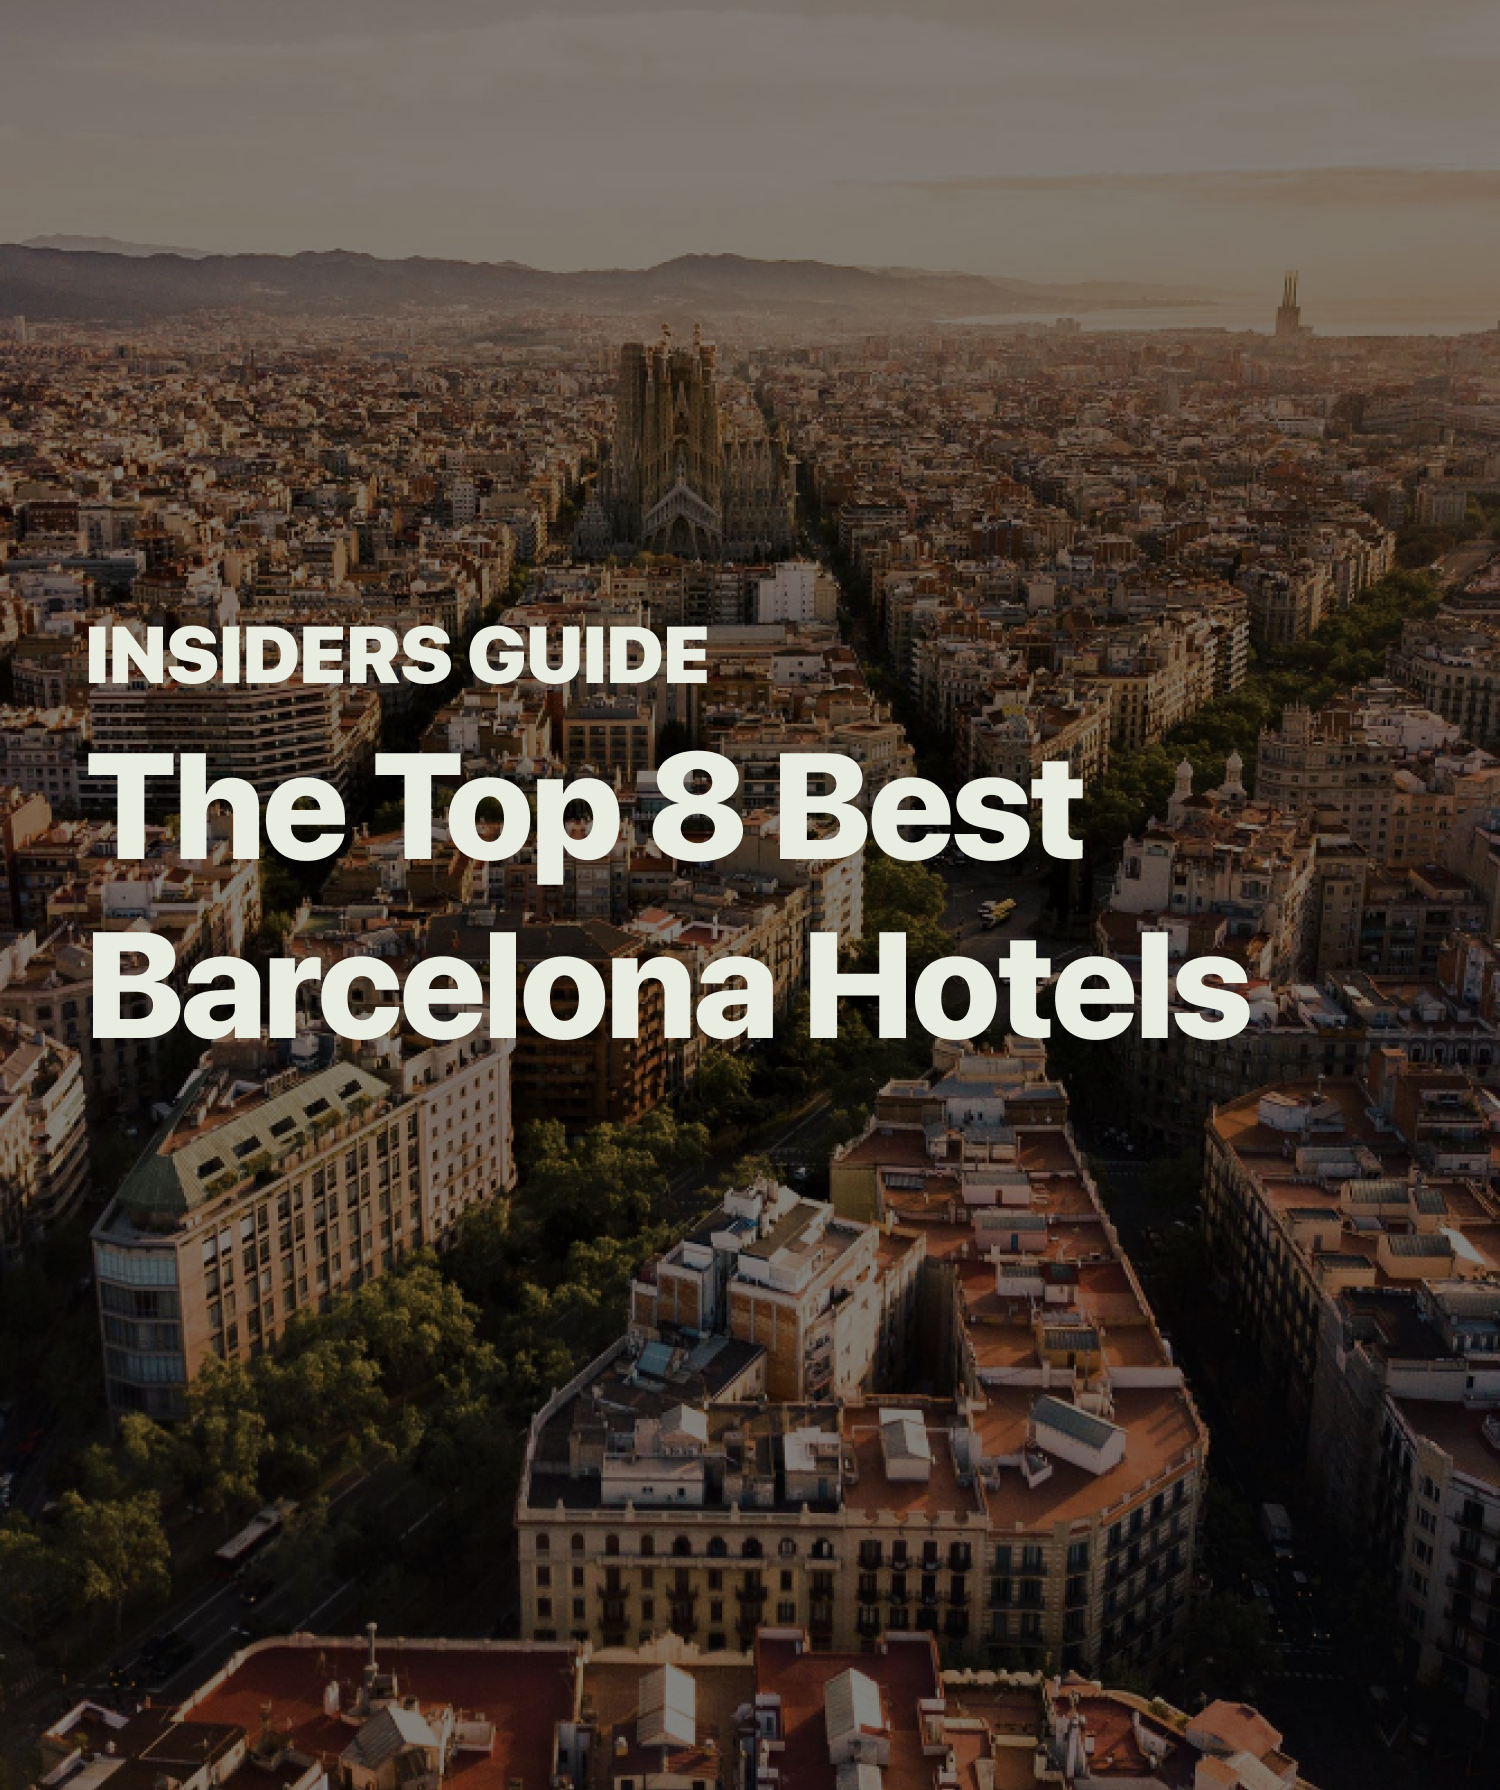 Top 8 Best Barcelona Hotels